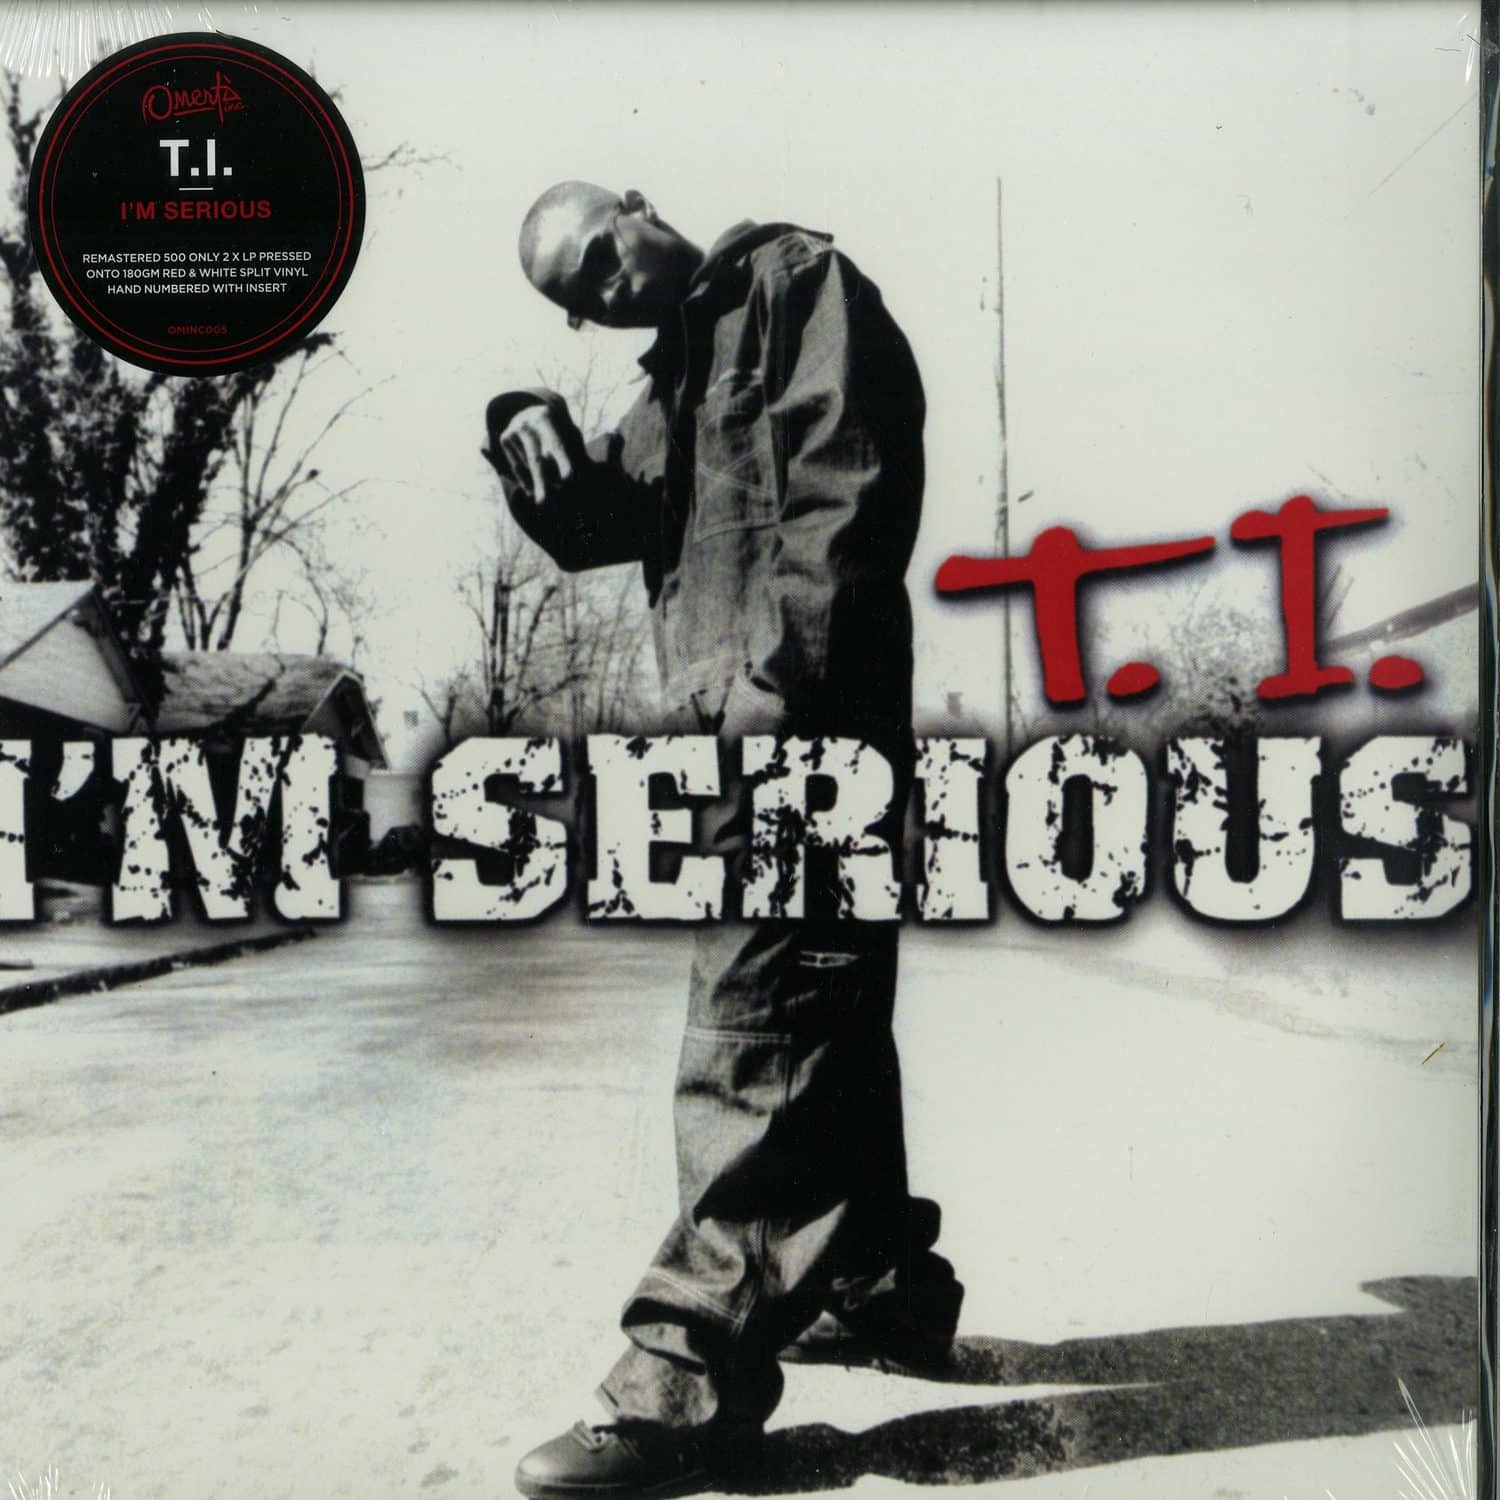 T.I. - I M SERIOUS 